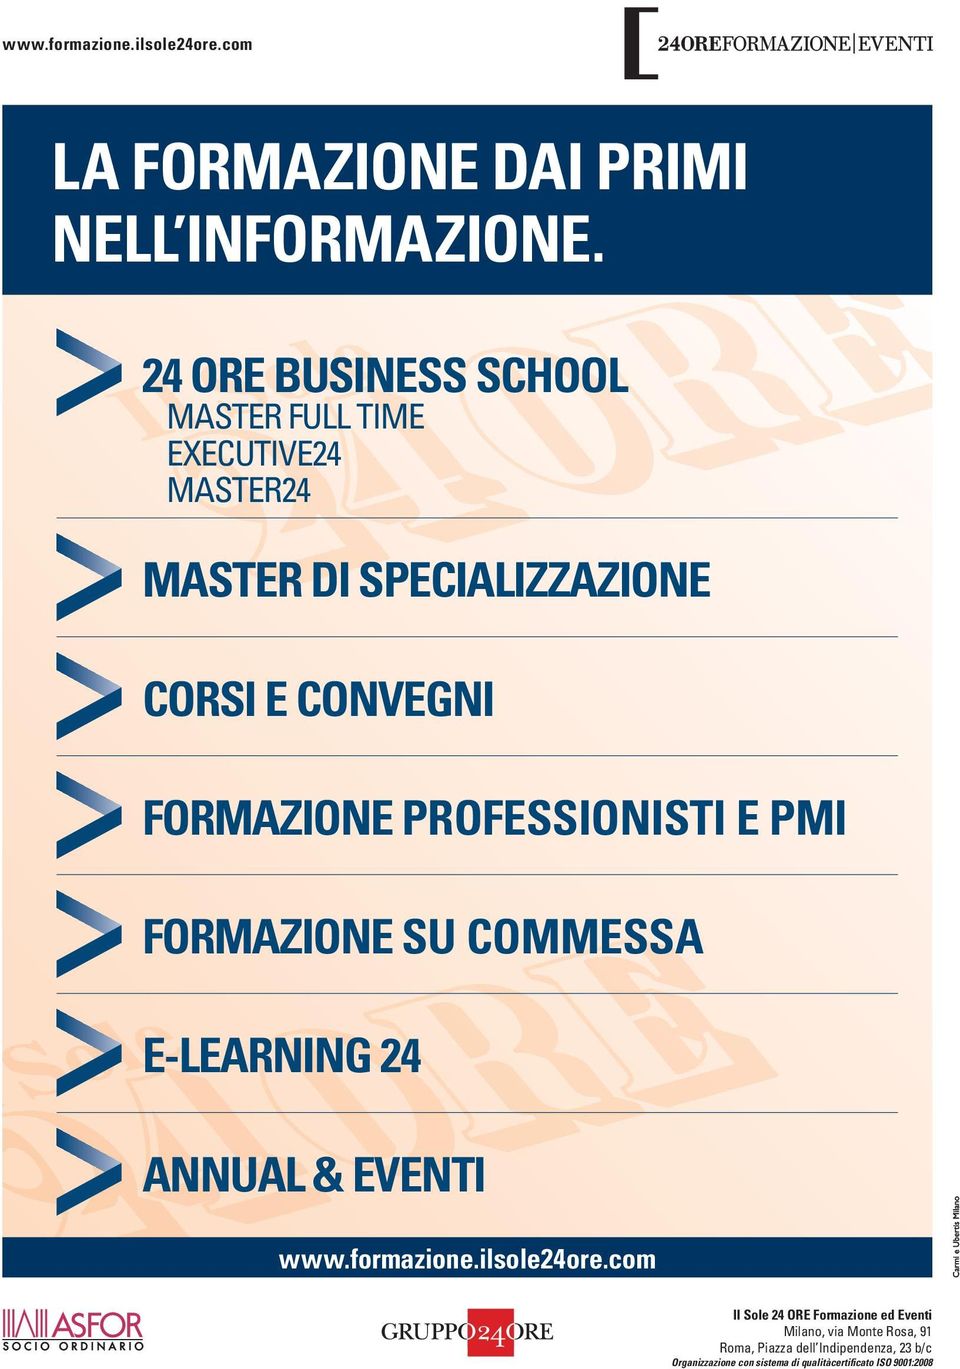 FORMAZIONE PROFESSIONISTI E PMI FORMAZIONE SU COMMESSA E-LEARNING 24 ANNUAL & EVENTI www.formazione.ilsole24ore.